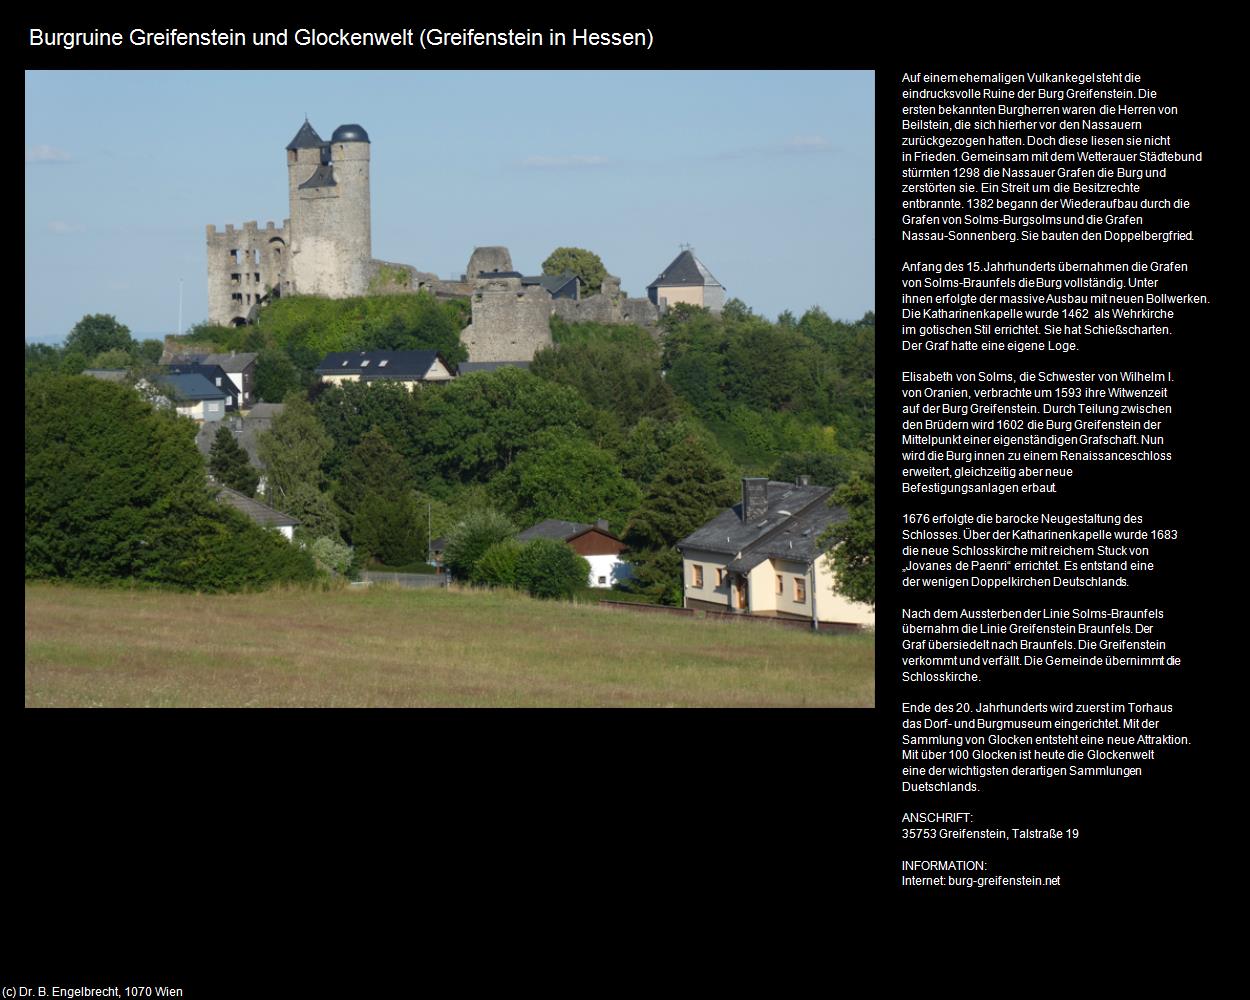 Burgruine Greifenstein und Glockenwelt (Greifenstein in Hessen) in Kulturatlas-HESSEN